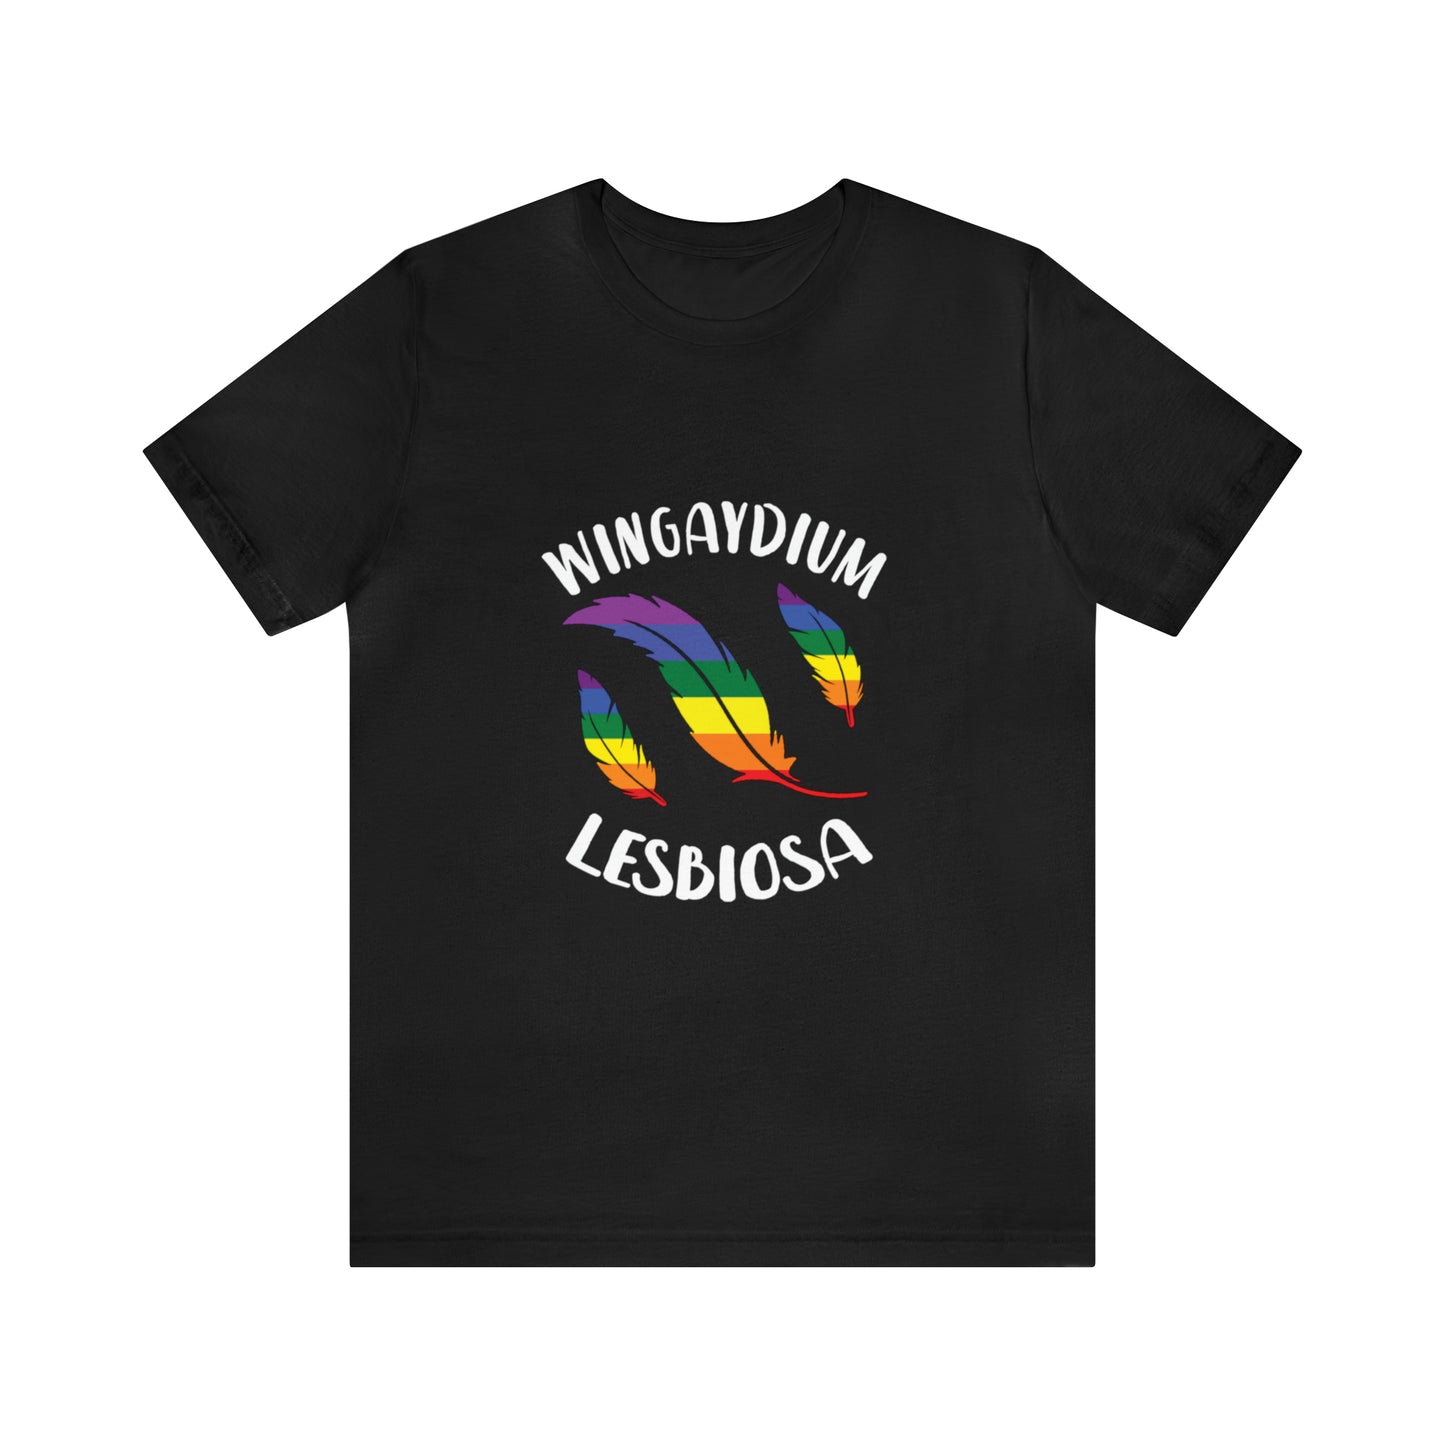 Wingaydium Lesbiosa - Unisex T-Shirt